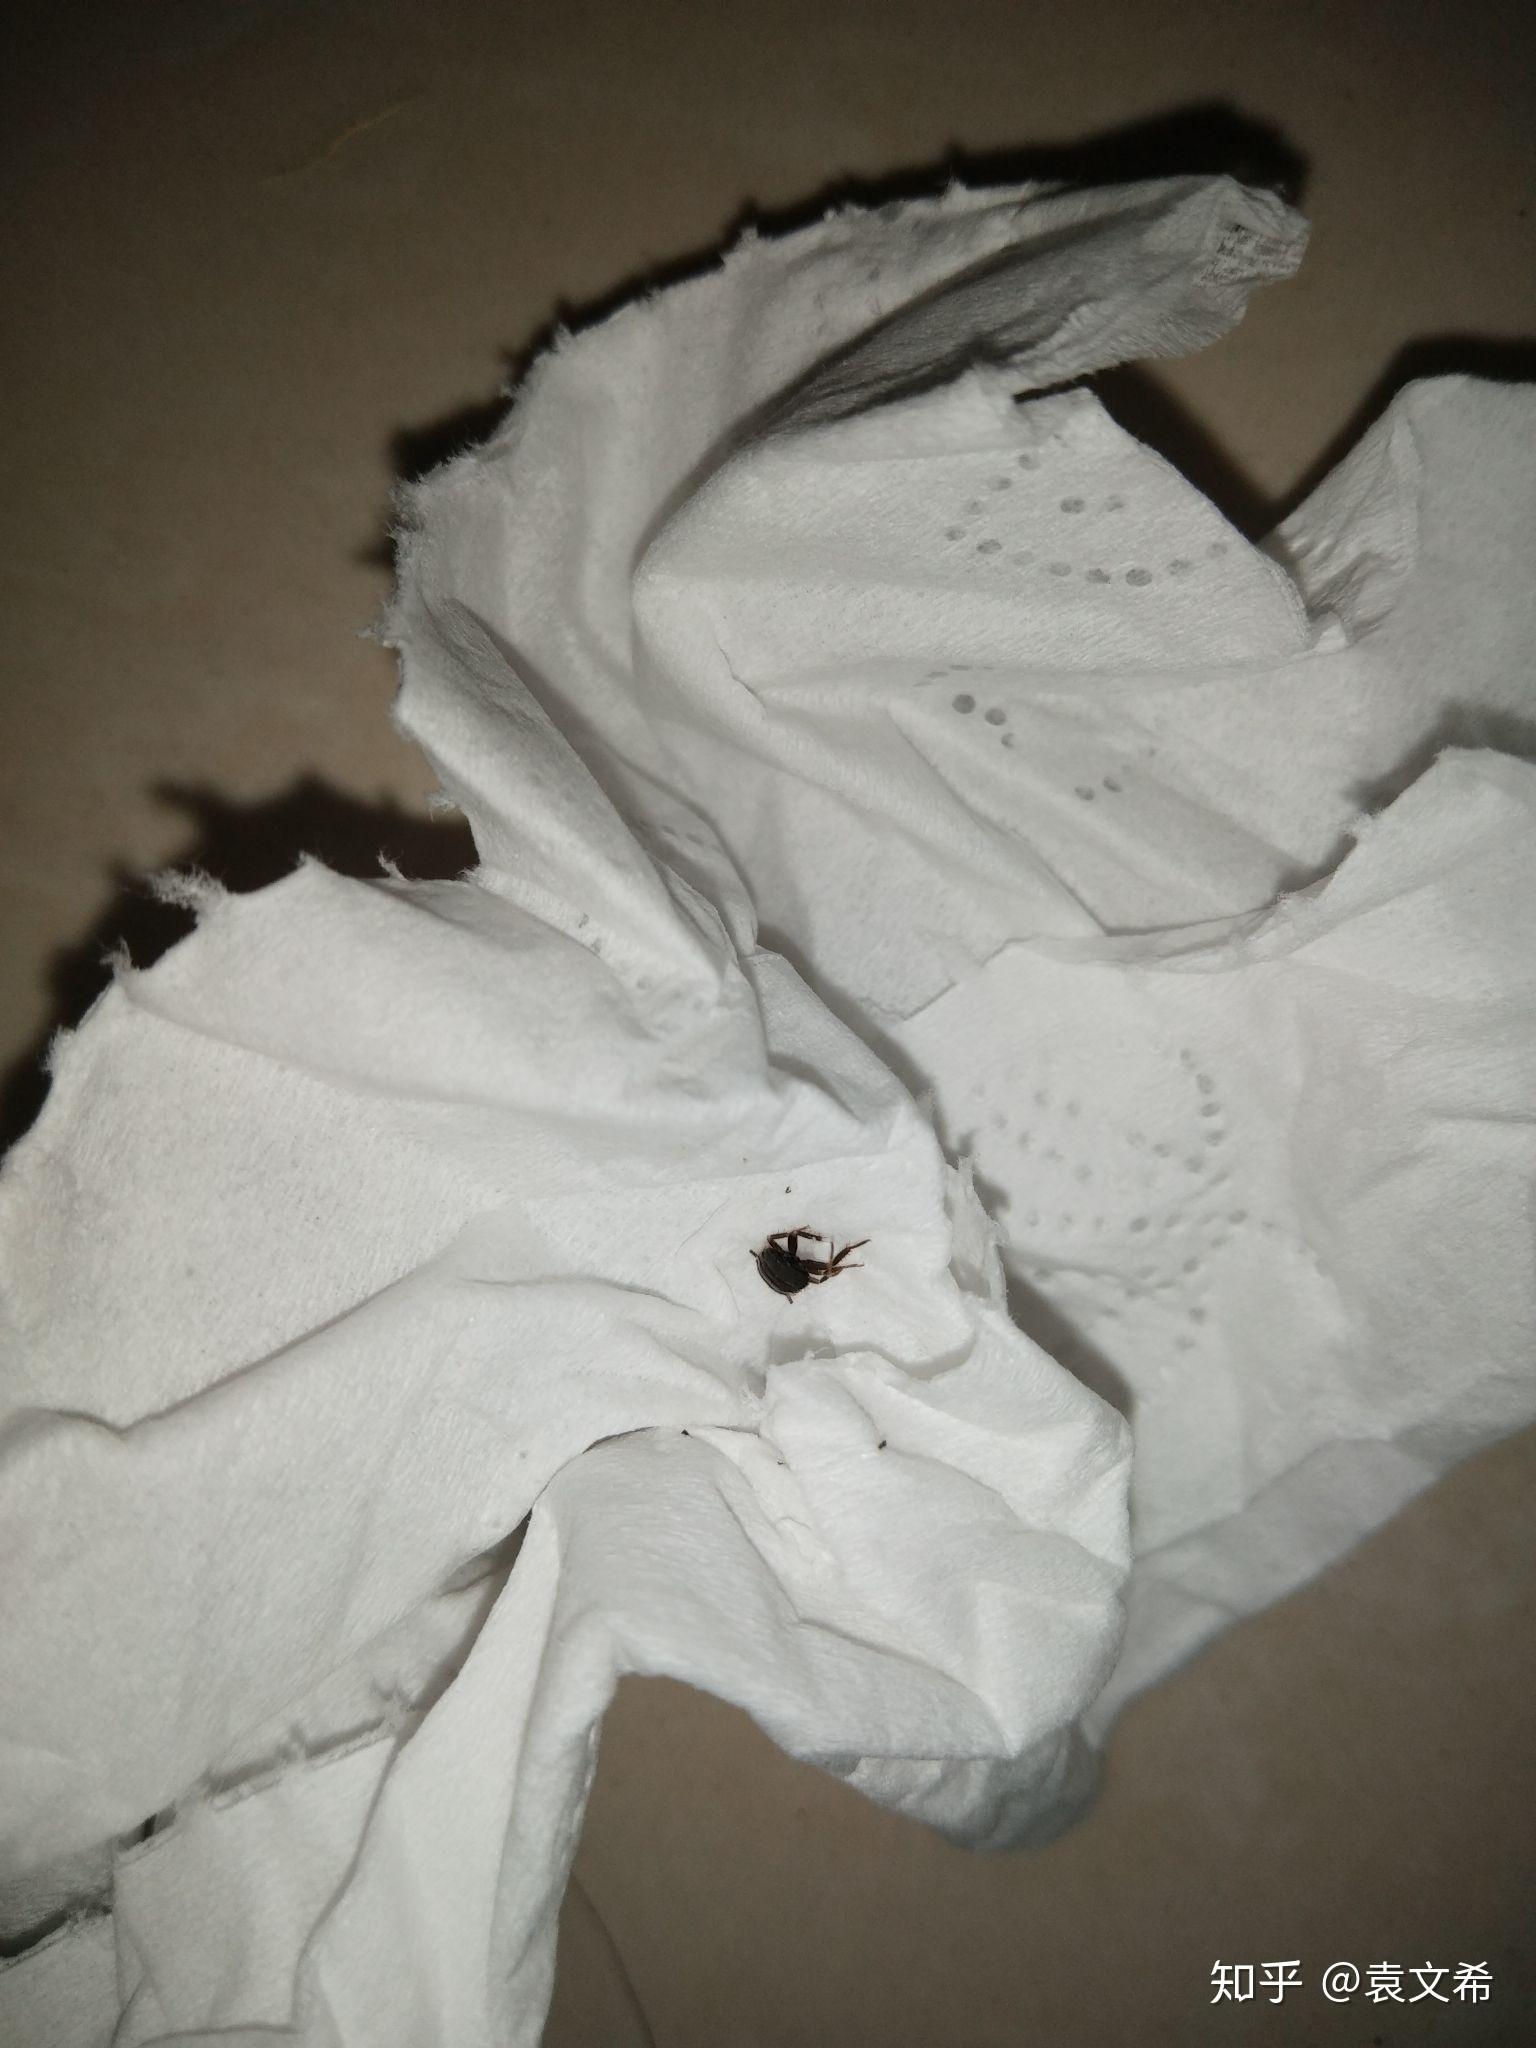 床上发现的小黑虫爬行速度快我四个月的女儿腿上还被咬了个包这是个